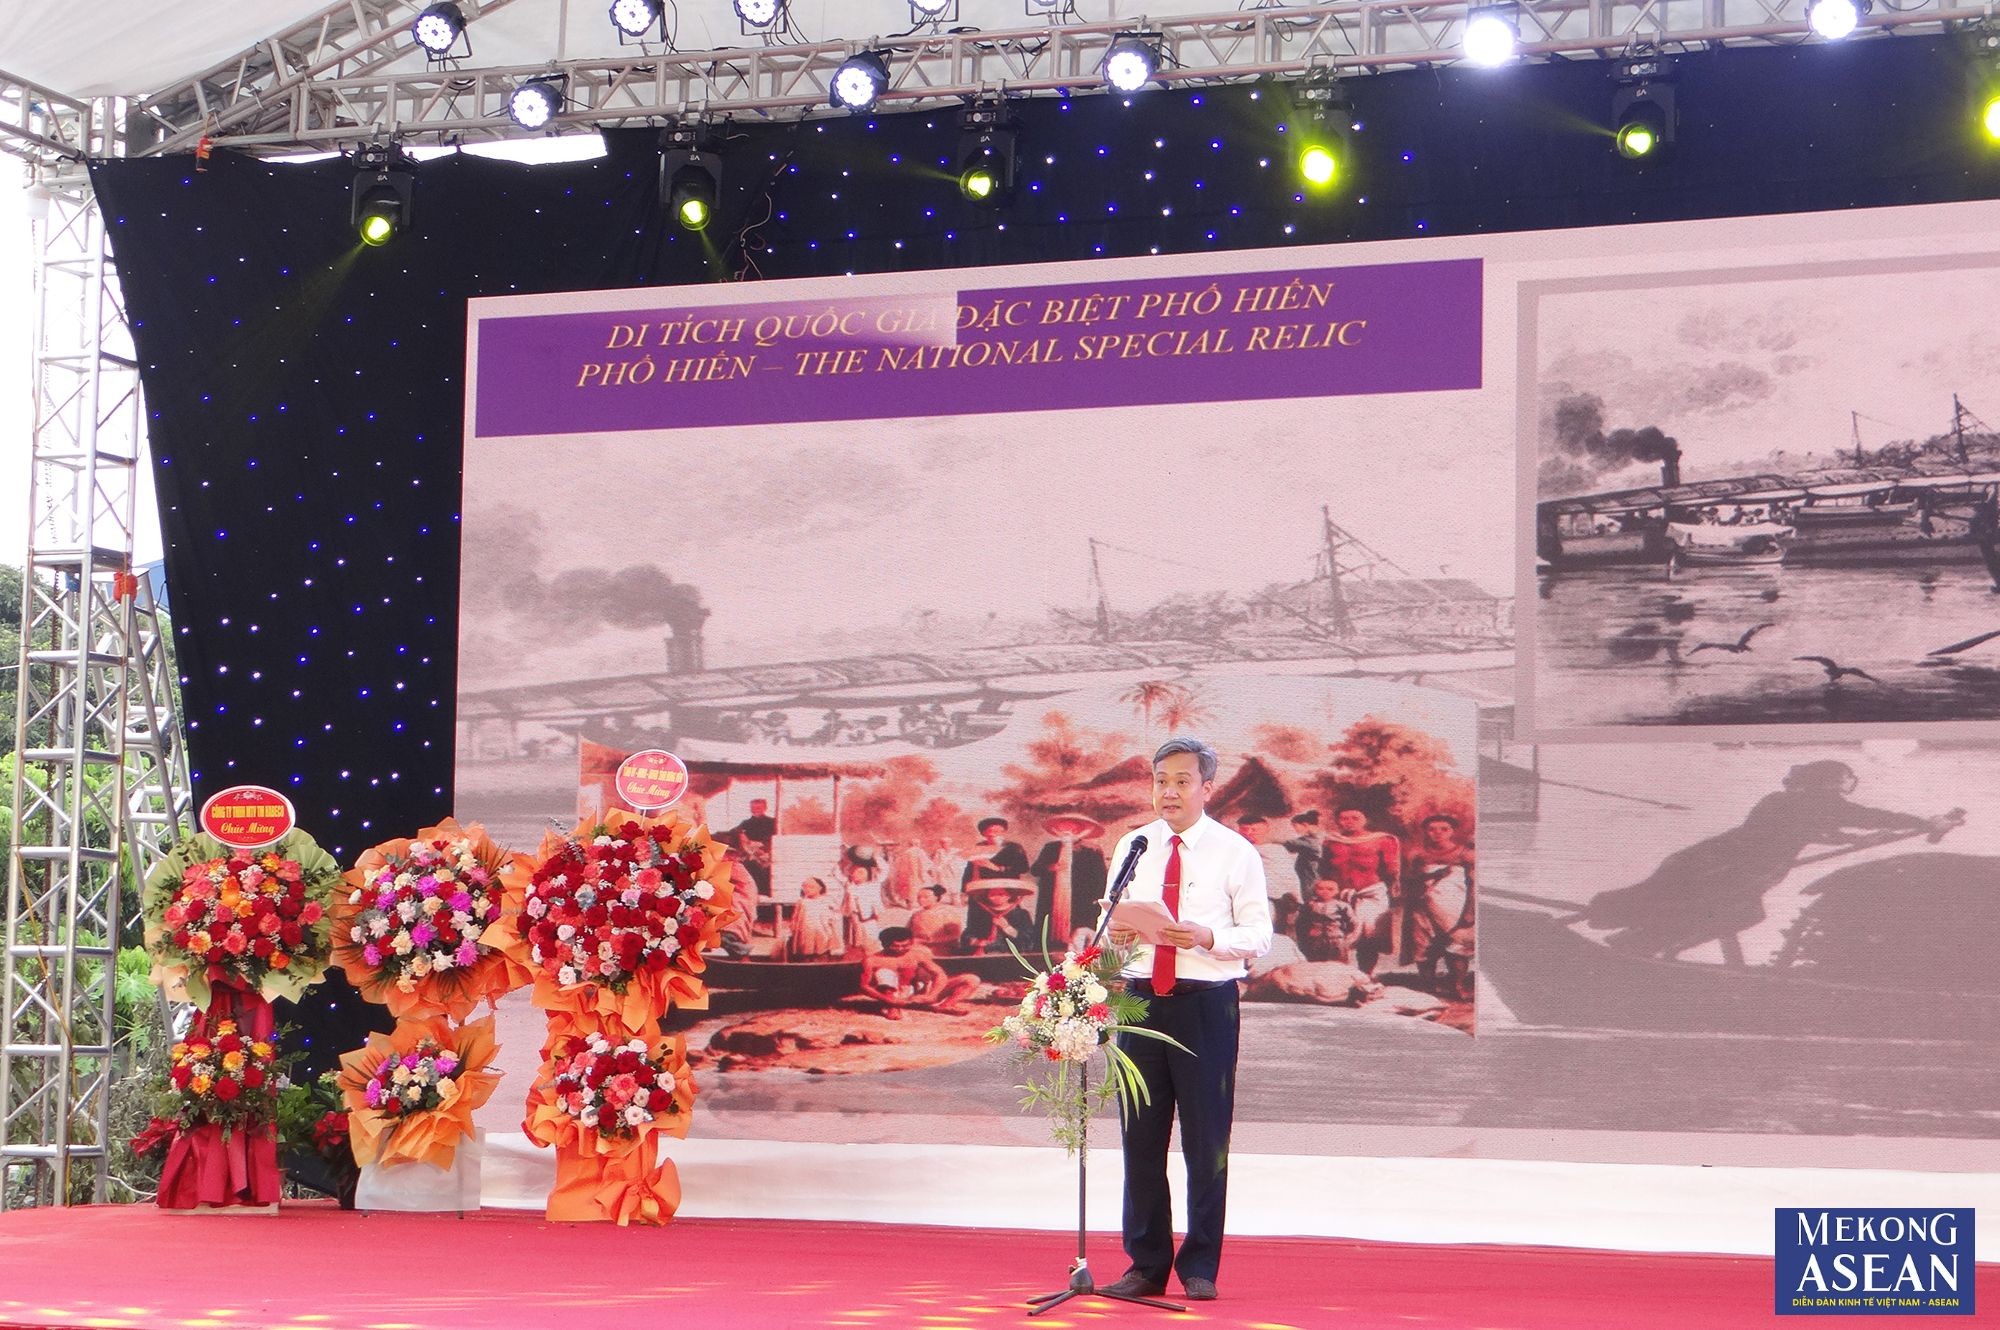 Ông Đỗ Hữu Nhân, Giám đốc Sở Văn hóa, Thể thao và Du lịch tỉnh Hưng Yên phát biểu khai mạc sự kiện.